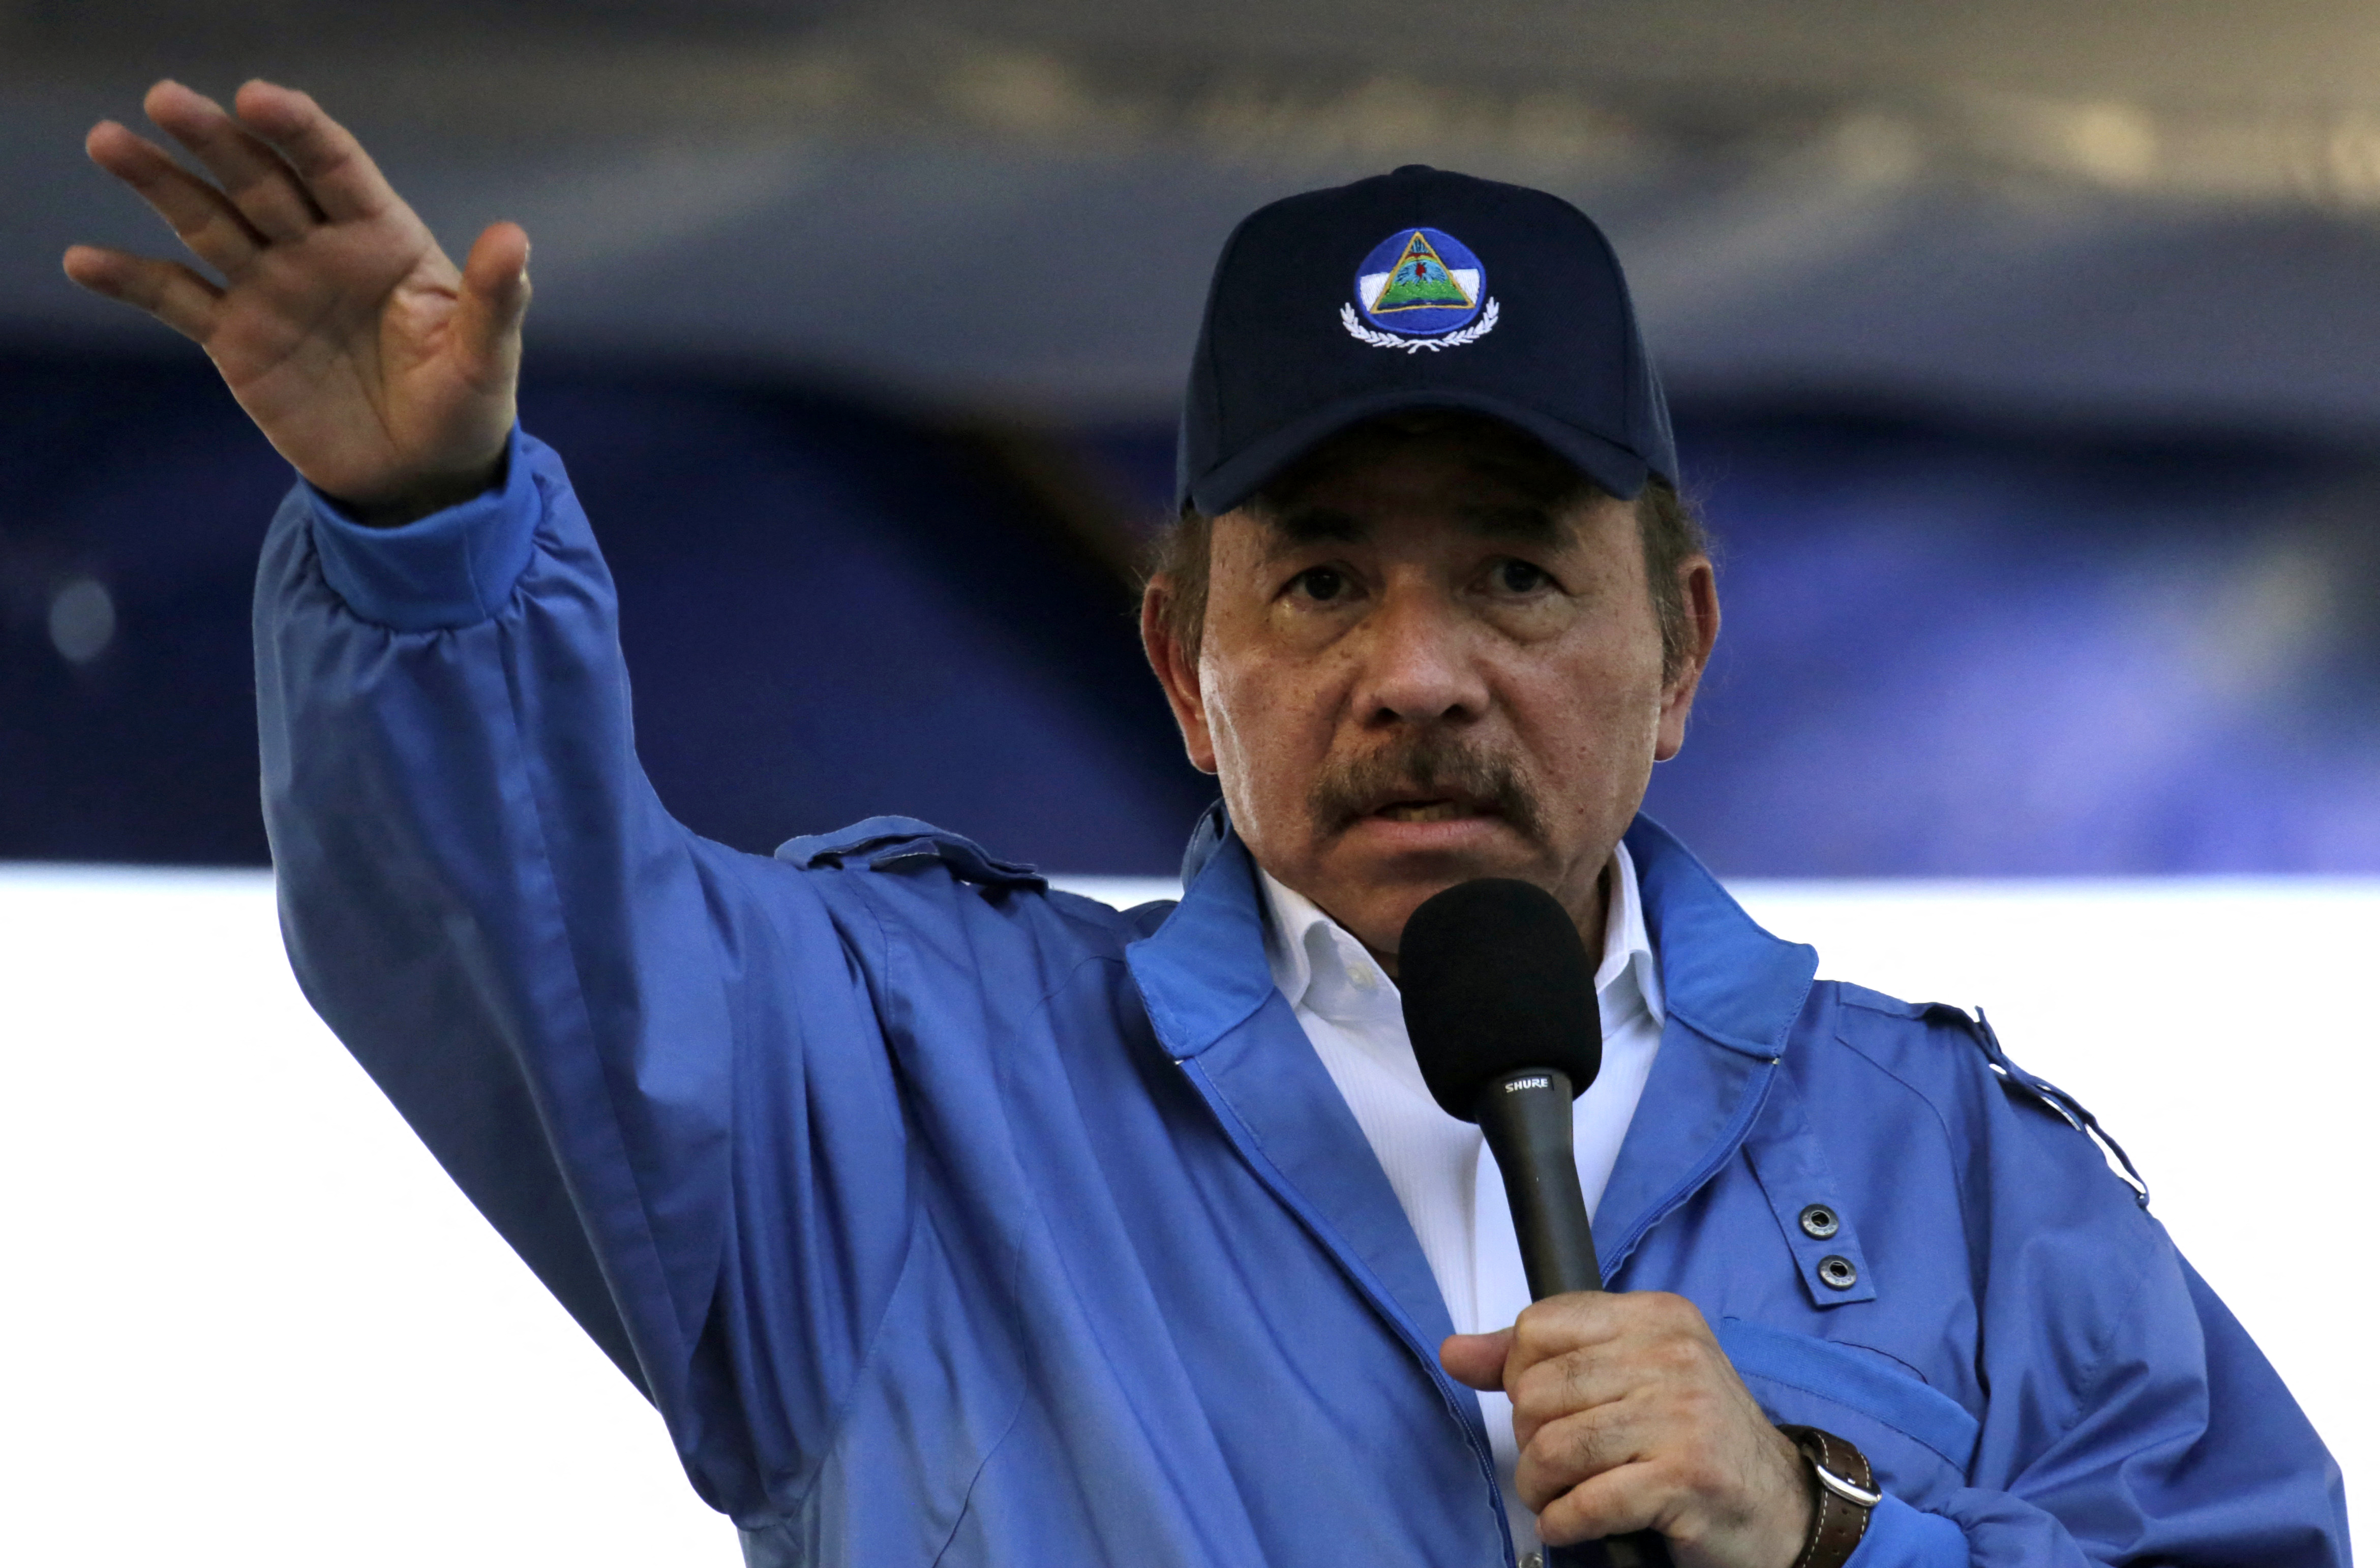 Daniel Ortega incrementa la persecución contra la oposición (INTI OCON/AFP)